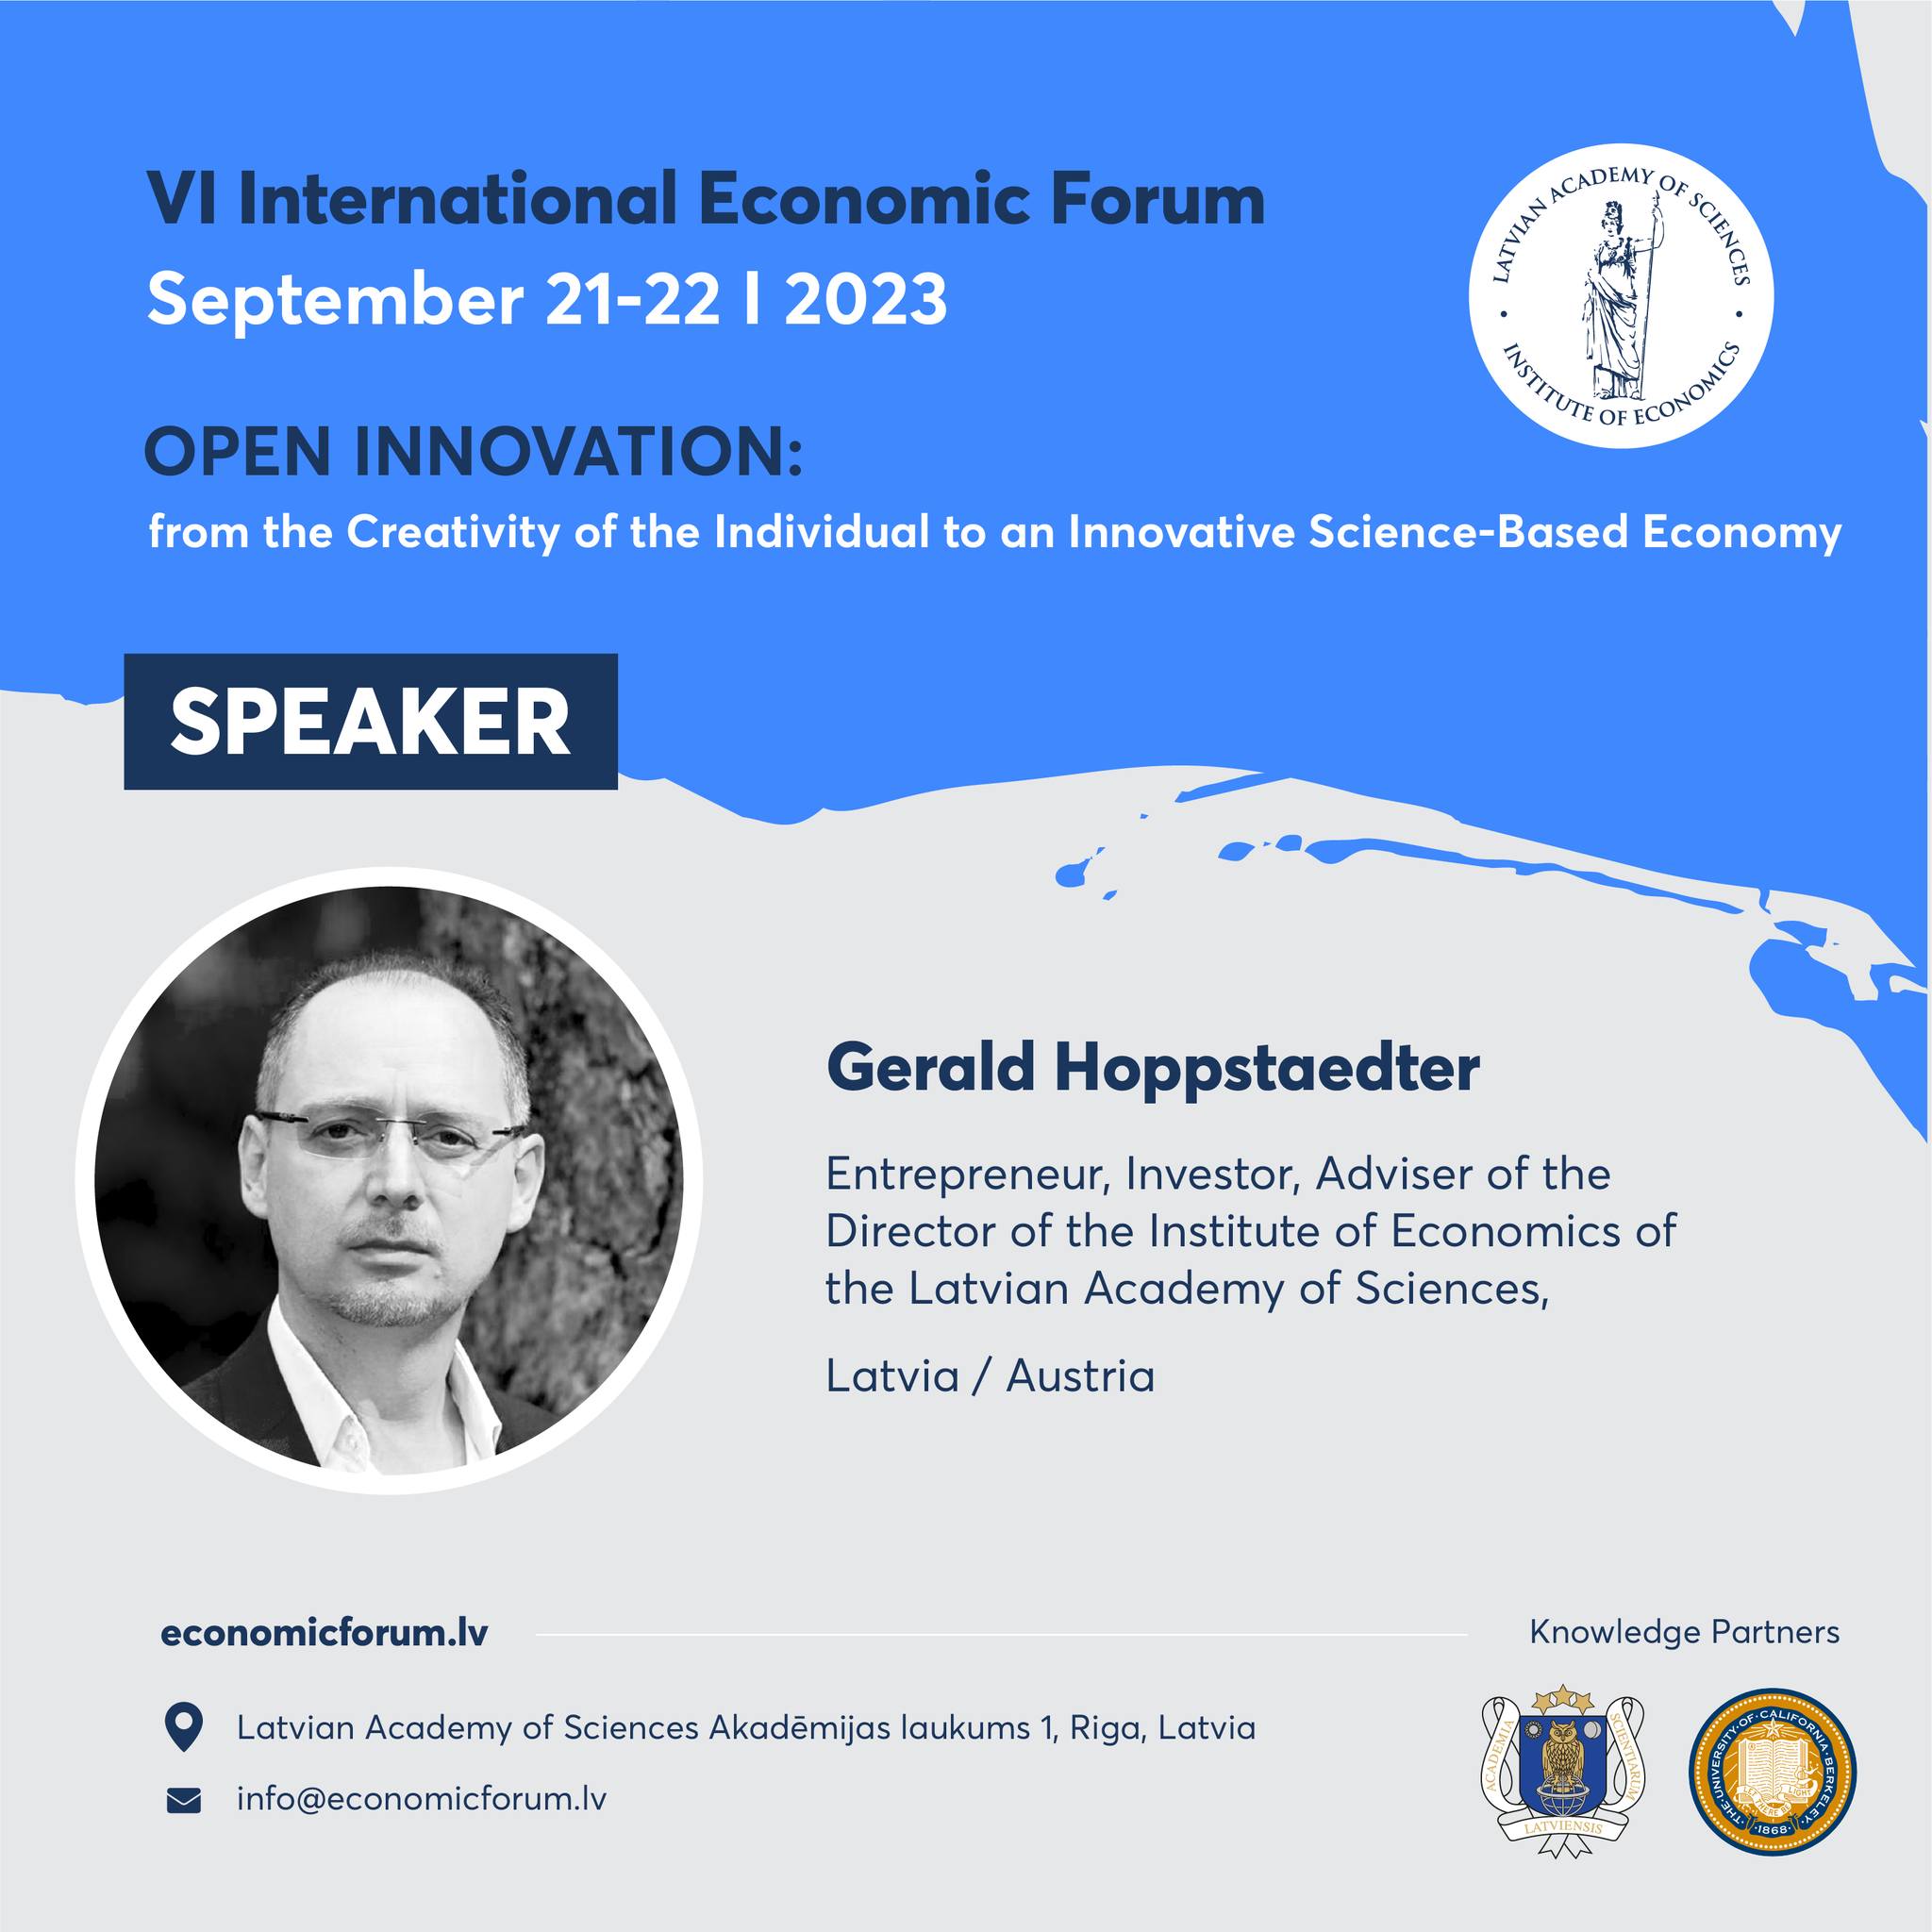 Mr Gerald Hoppstaedter Entrepreneur